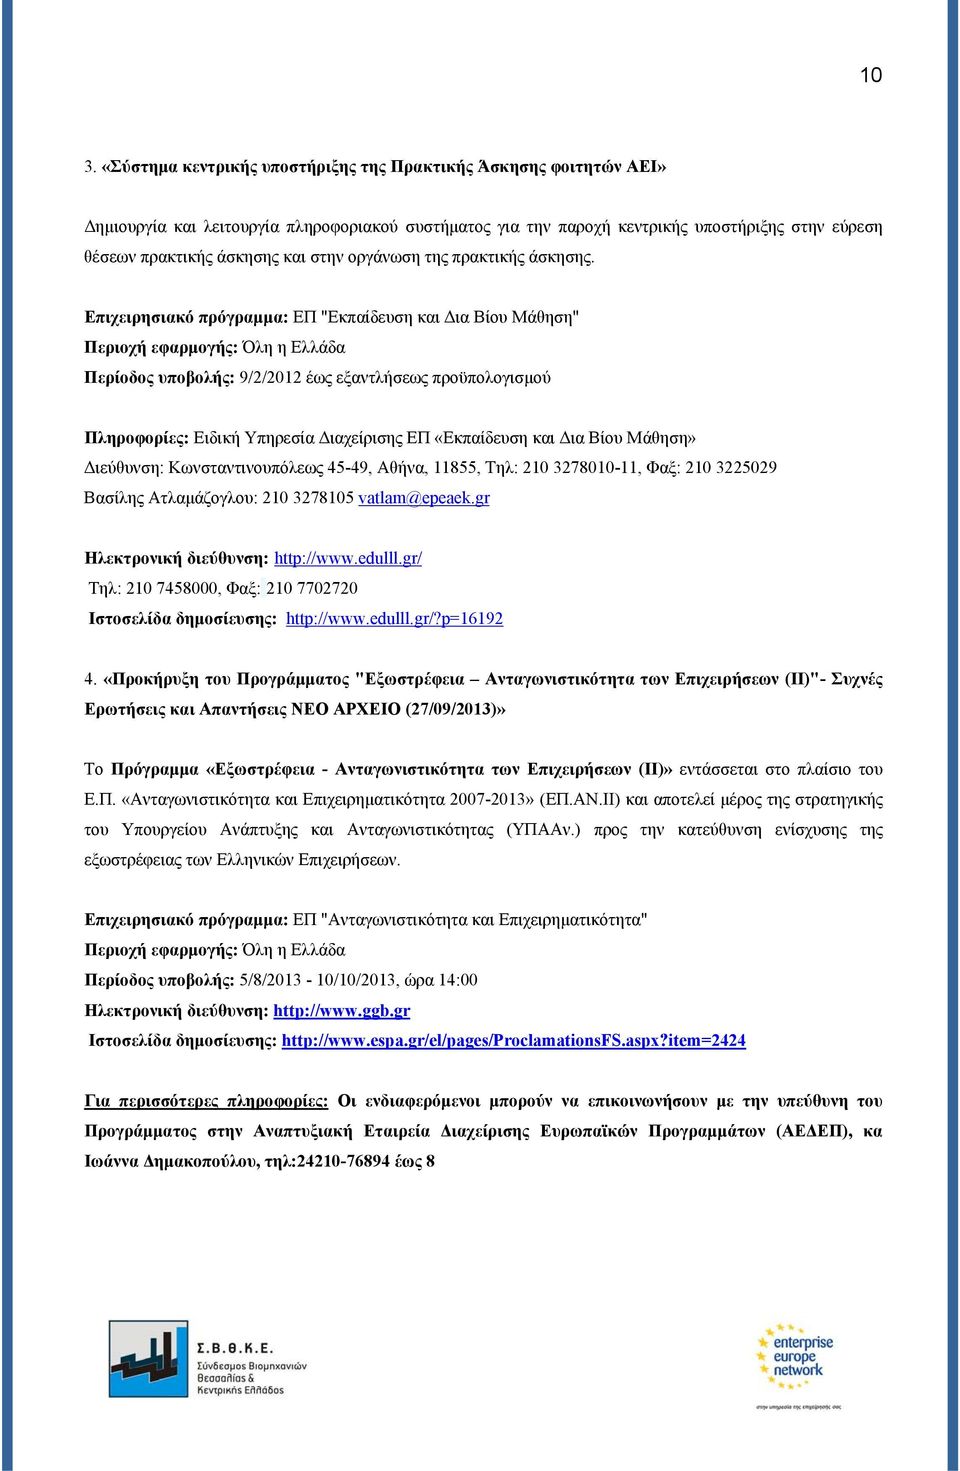 Επιχειρησιακό πρόγραμμα: ΕΠ "Εκπαίδευση και Δια Βίου Μάθηση" Περιοχή εφαρμογής: Όλη η Ελλάδα Περίοδος υποβολής: 9/2/2012 έως εξαντλήσεως προϋπολογισμού Πληροφορίες: Ειδική Υπηρεσία Διαχείρισης ΕΠ